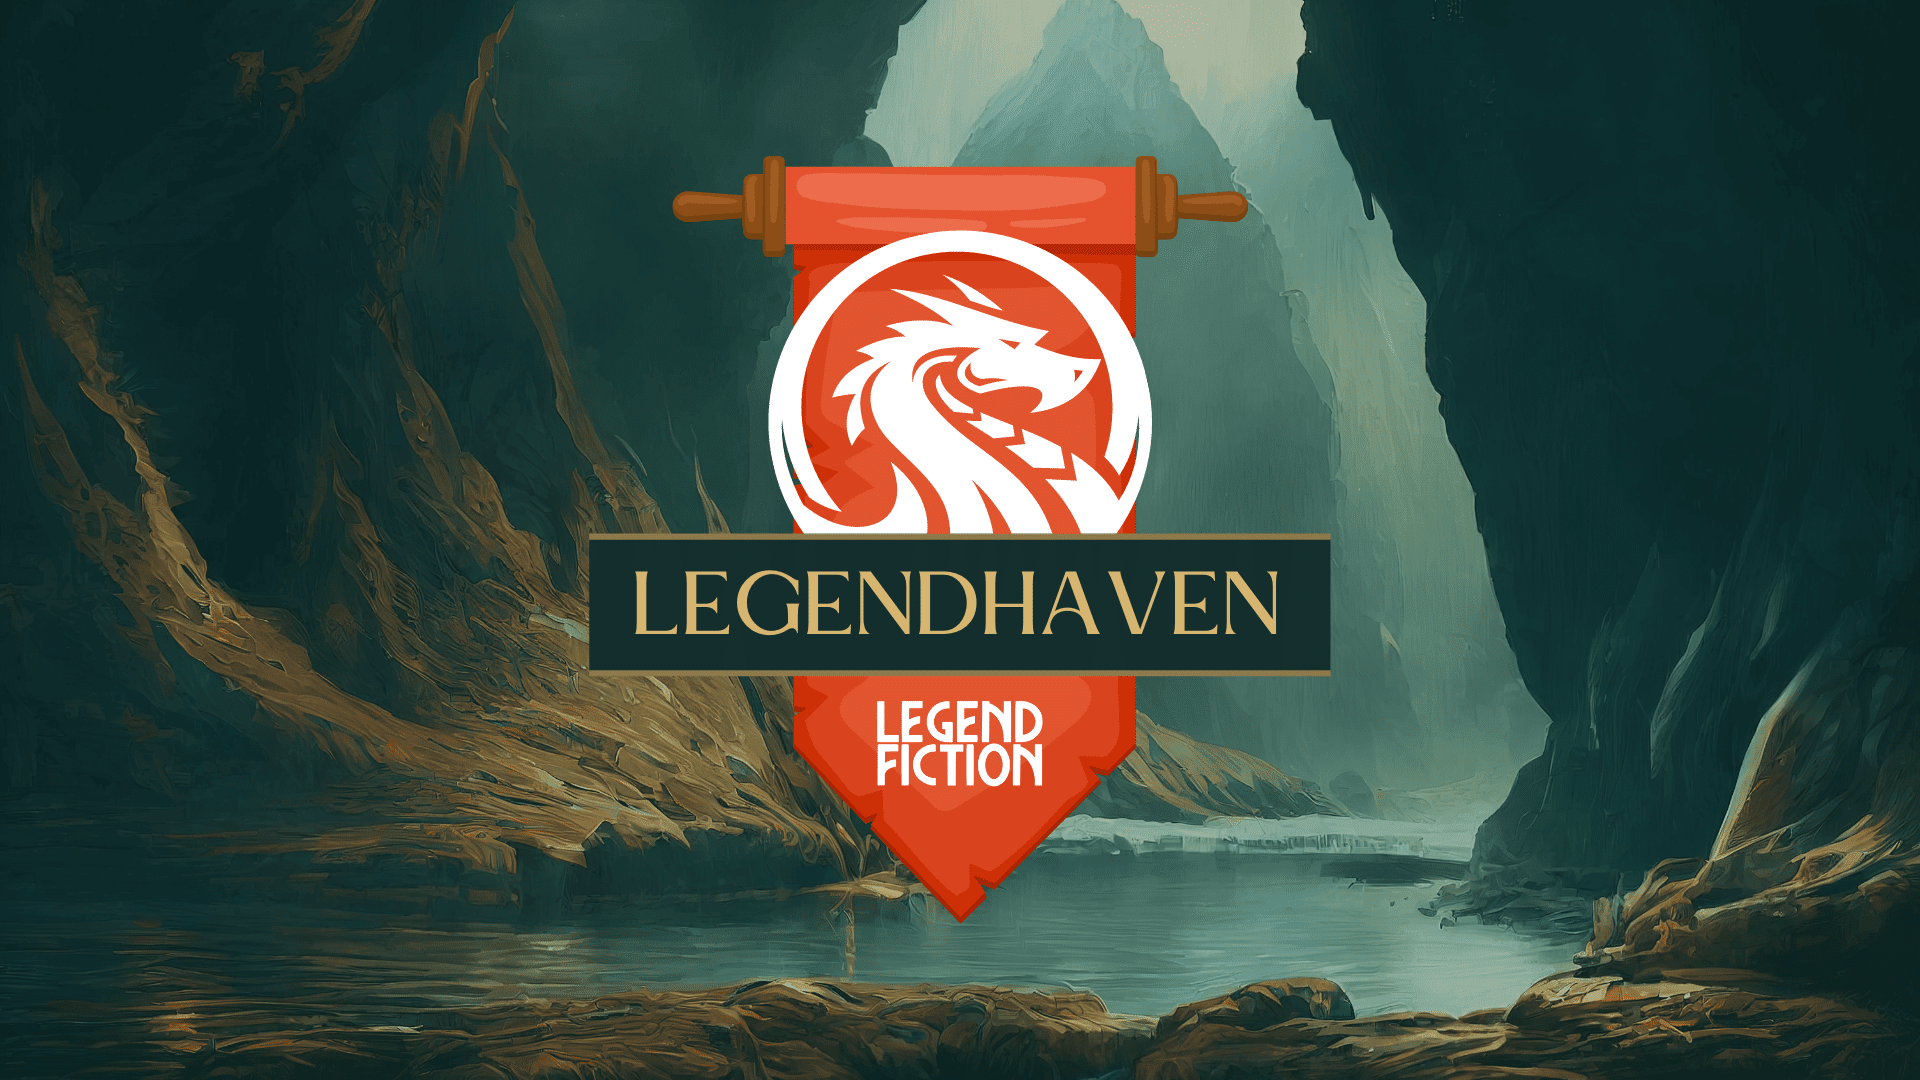 LegendHaven Convention 2022